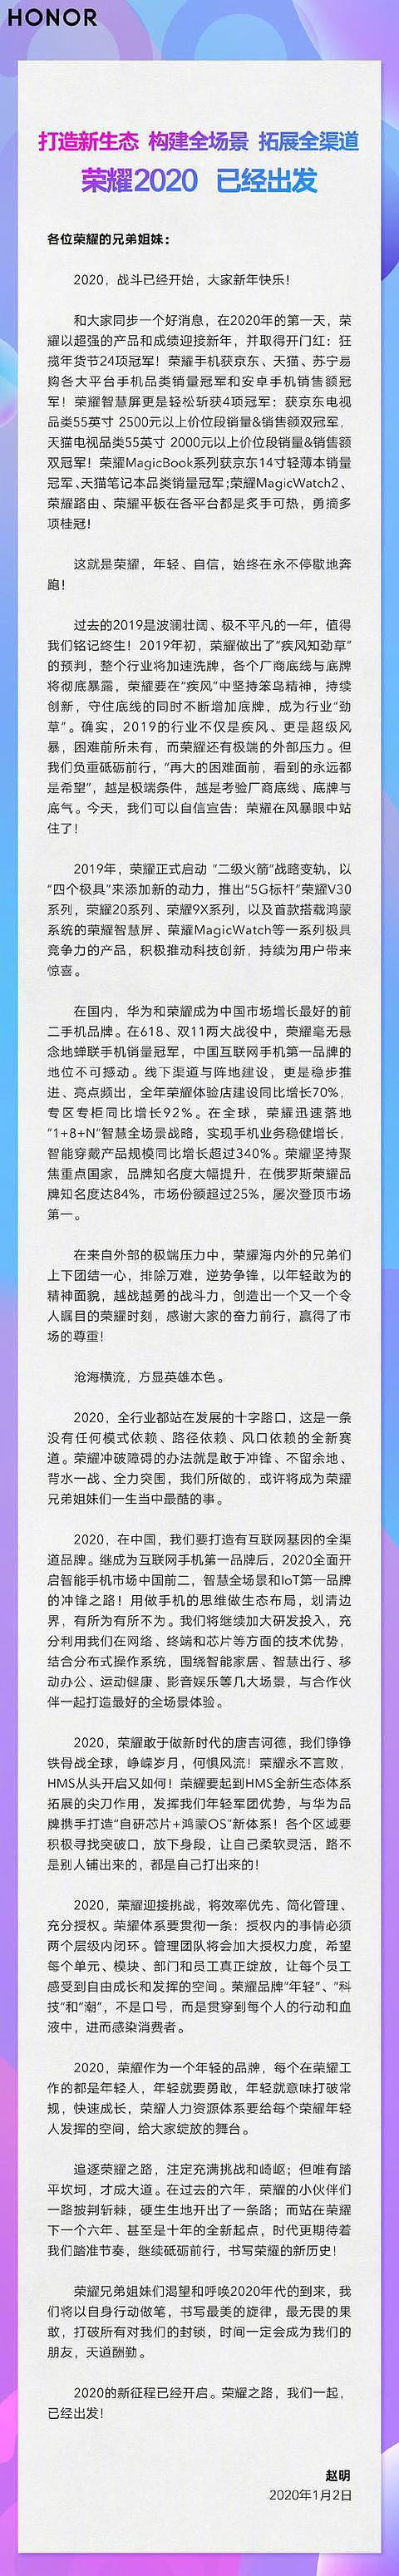 赵明发表致荣耀全员邮件 2020做HMS生态拓展尖刀